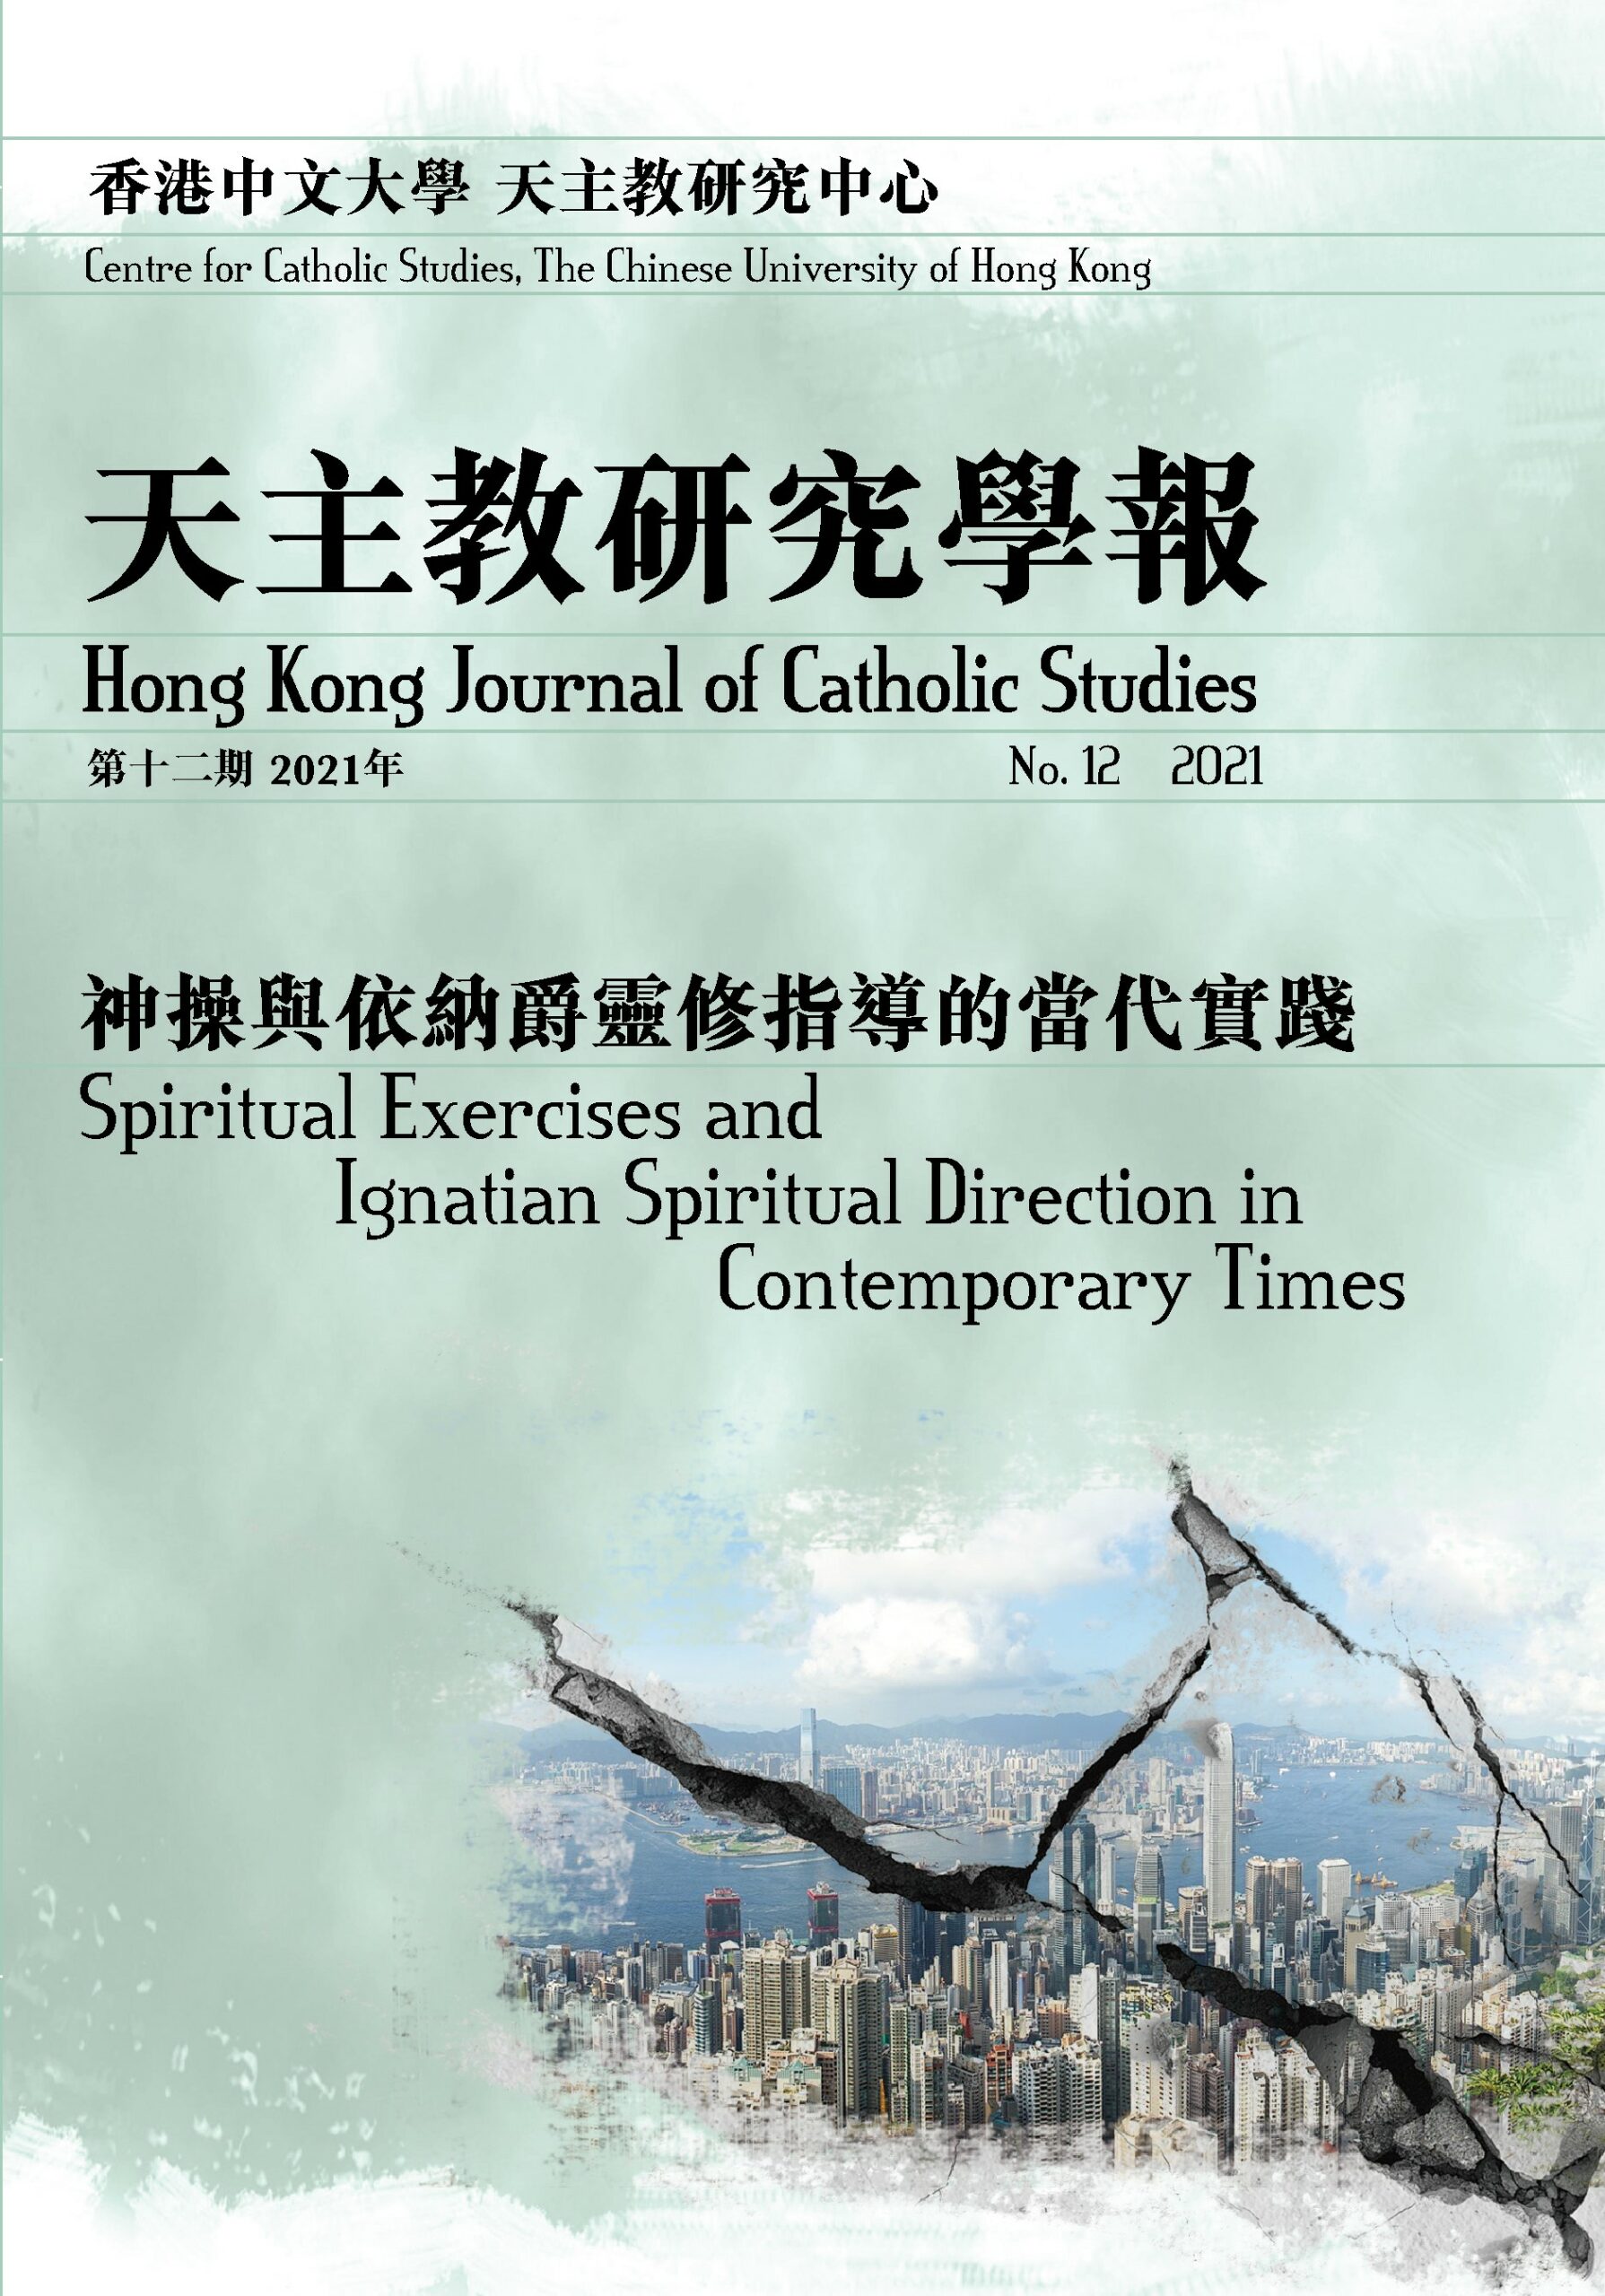 Hong Kong Journal of Catholic Studies No.12 2021